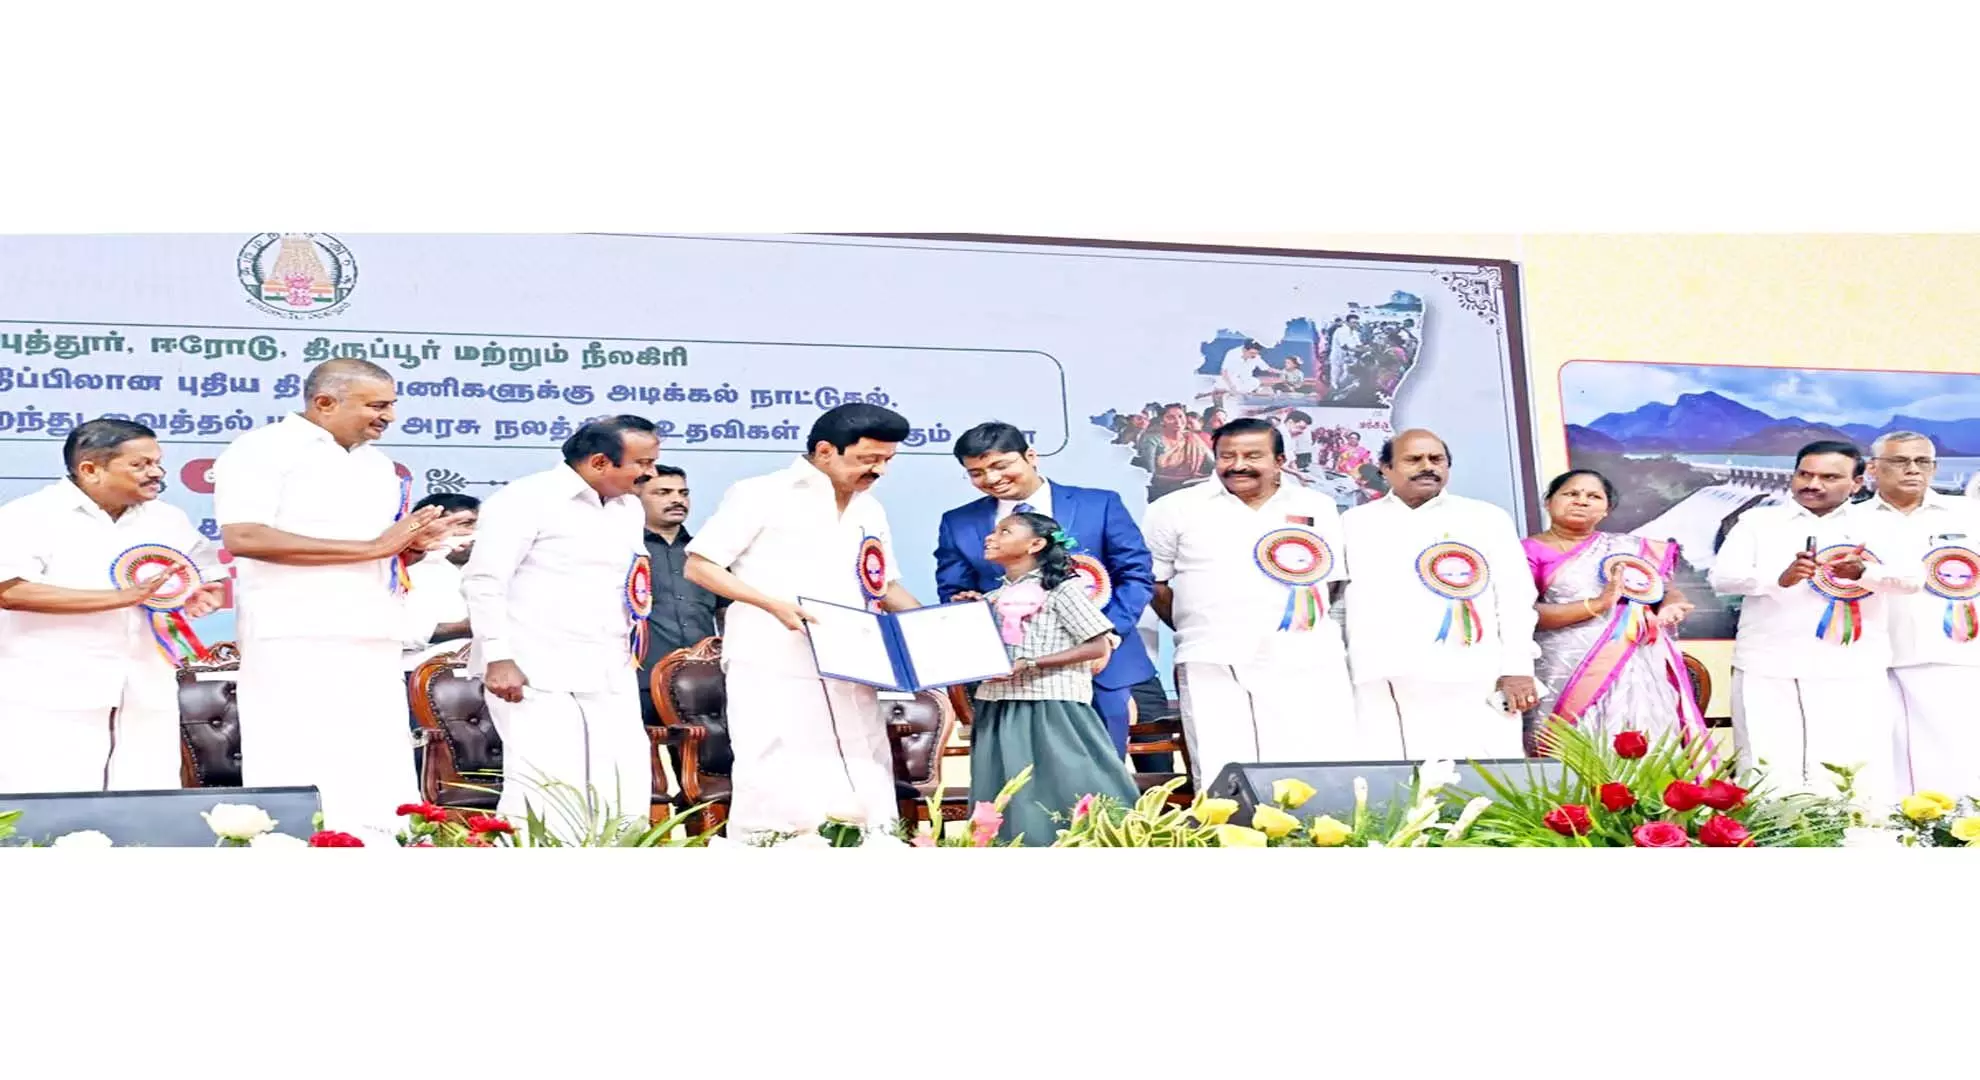 तमिलनाडु के मुख्यमंत्री ने पीएम मोदी से राज्य द्वारा अवरुद्ध की गई केंद्रीय योजनाओं की सूची मांगी